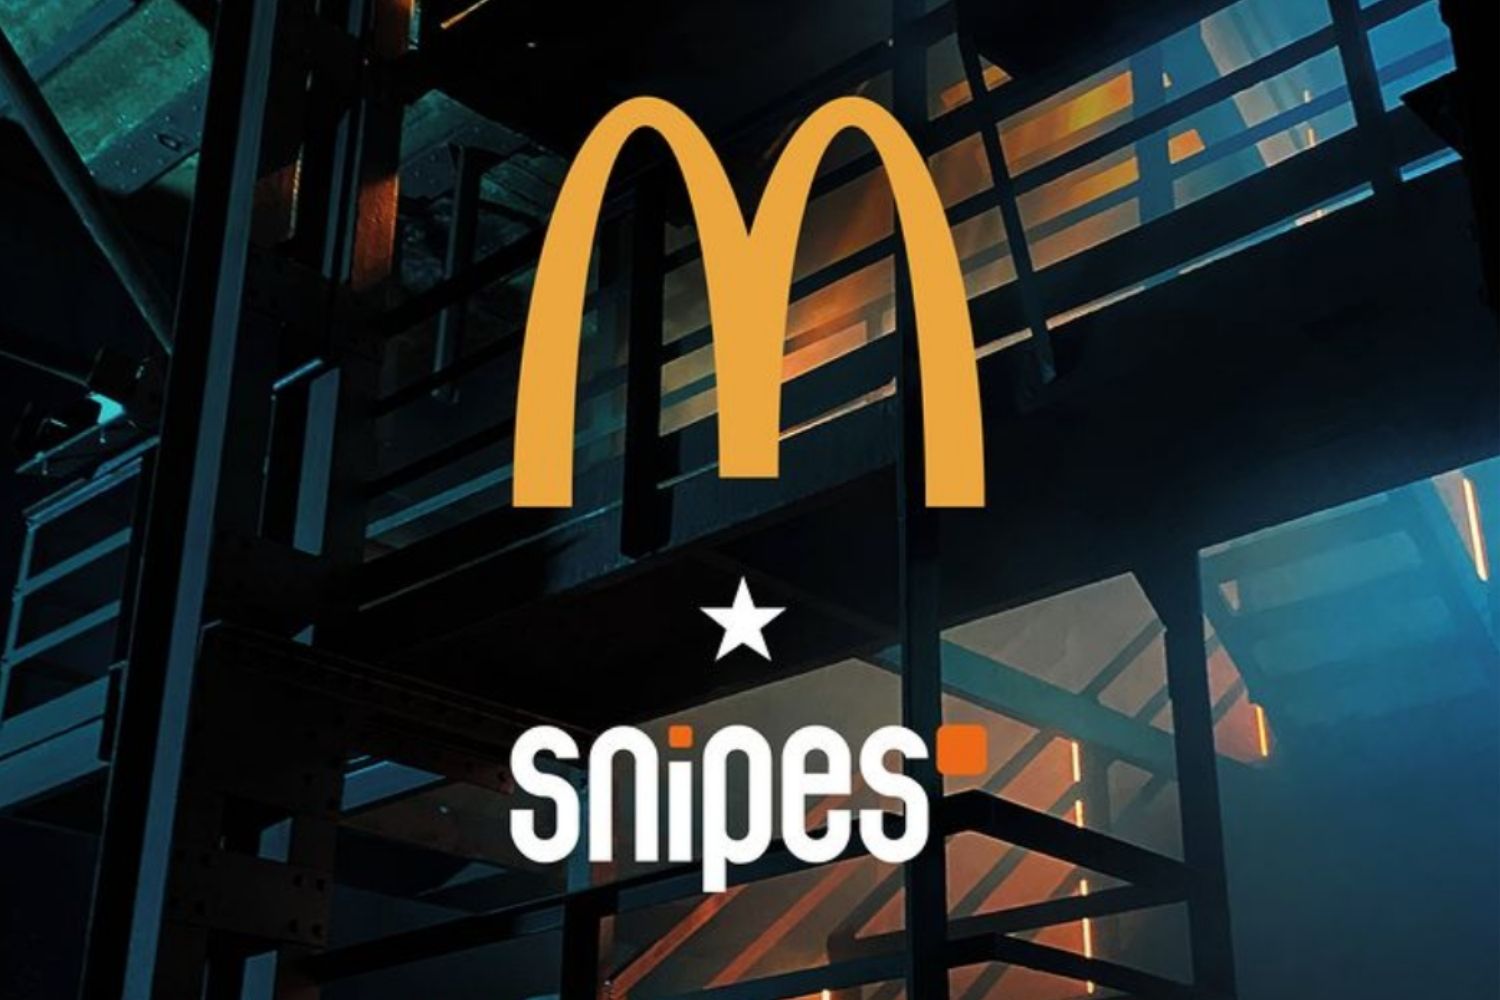 De nieuwe Snipes x McDonalds collectie is onderweg